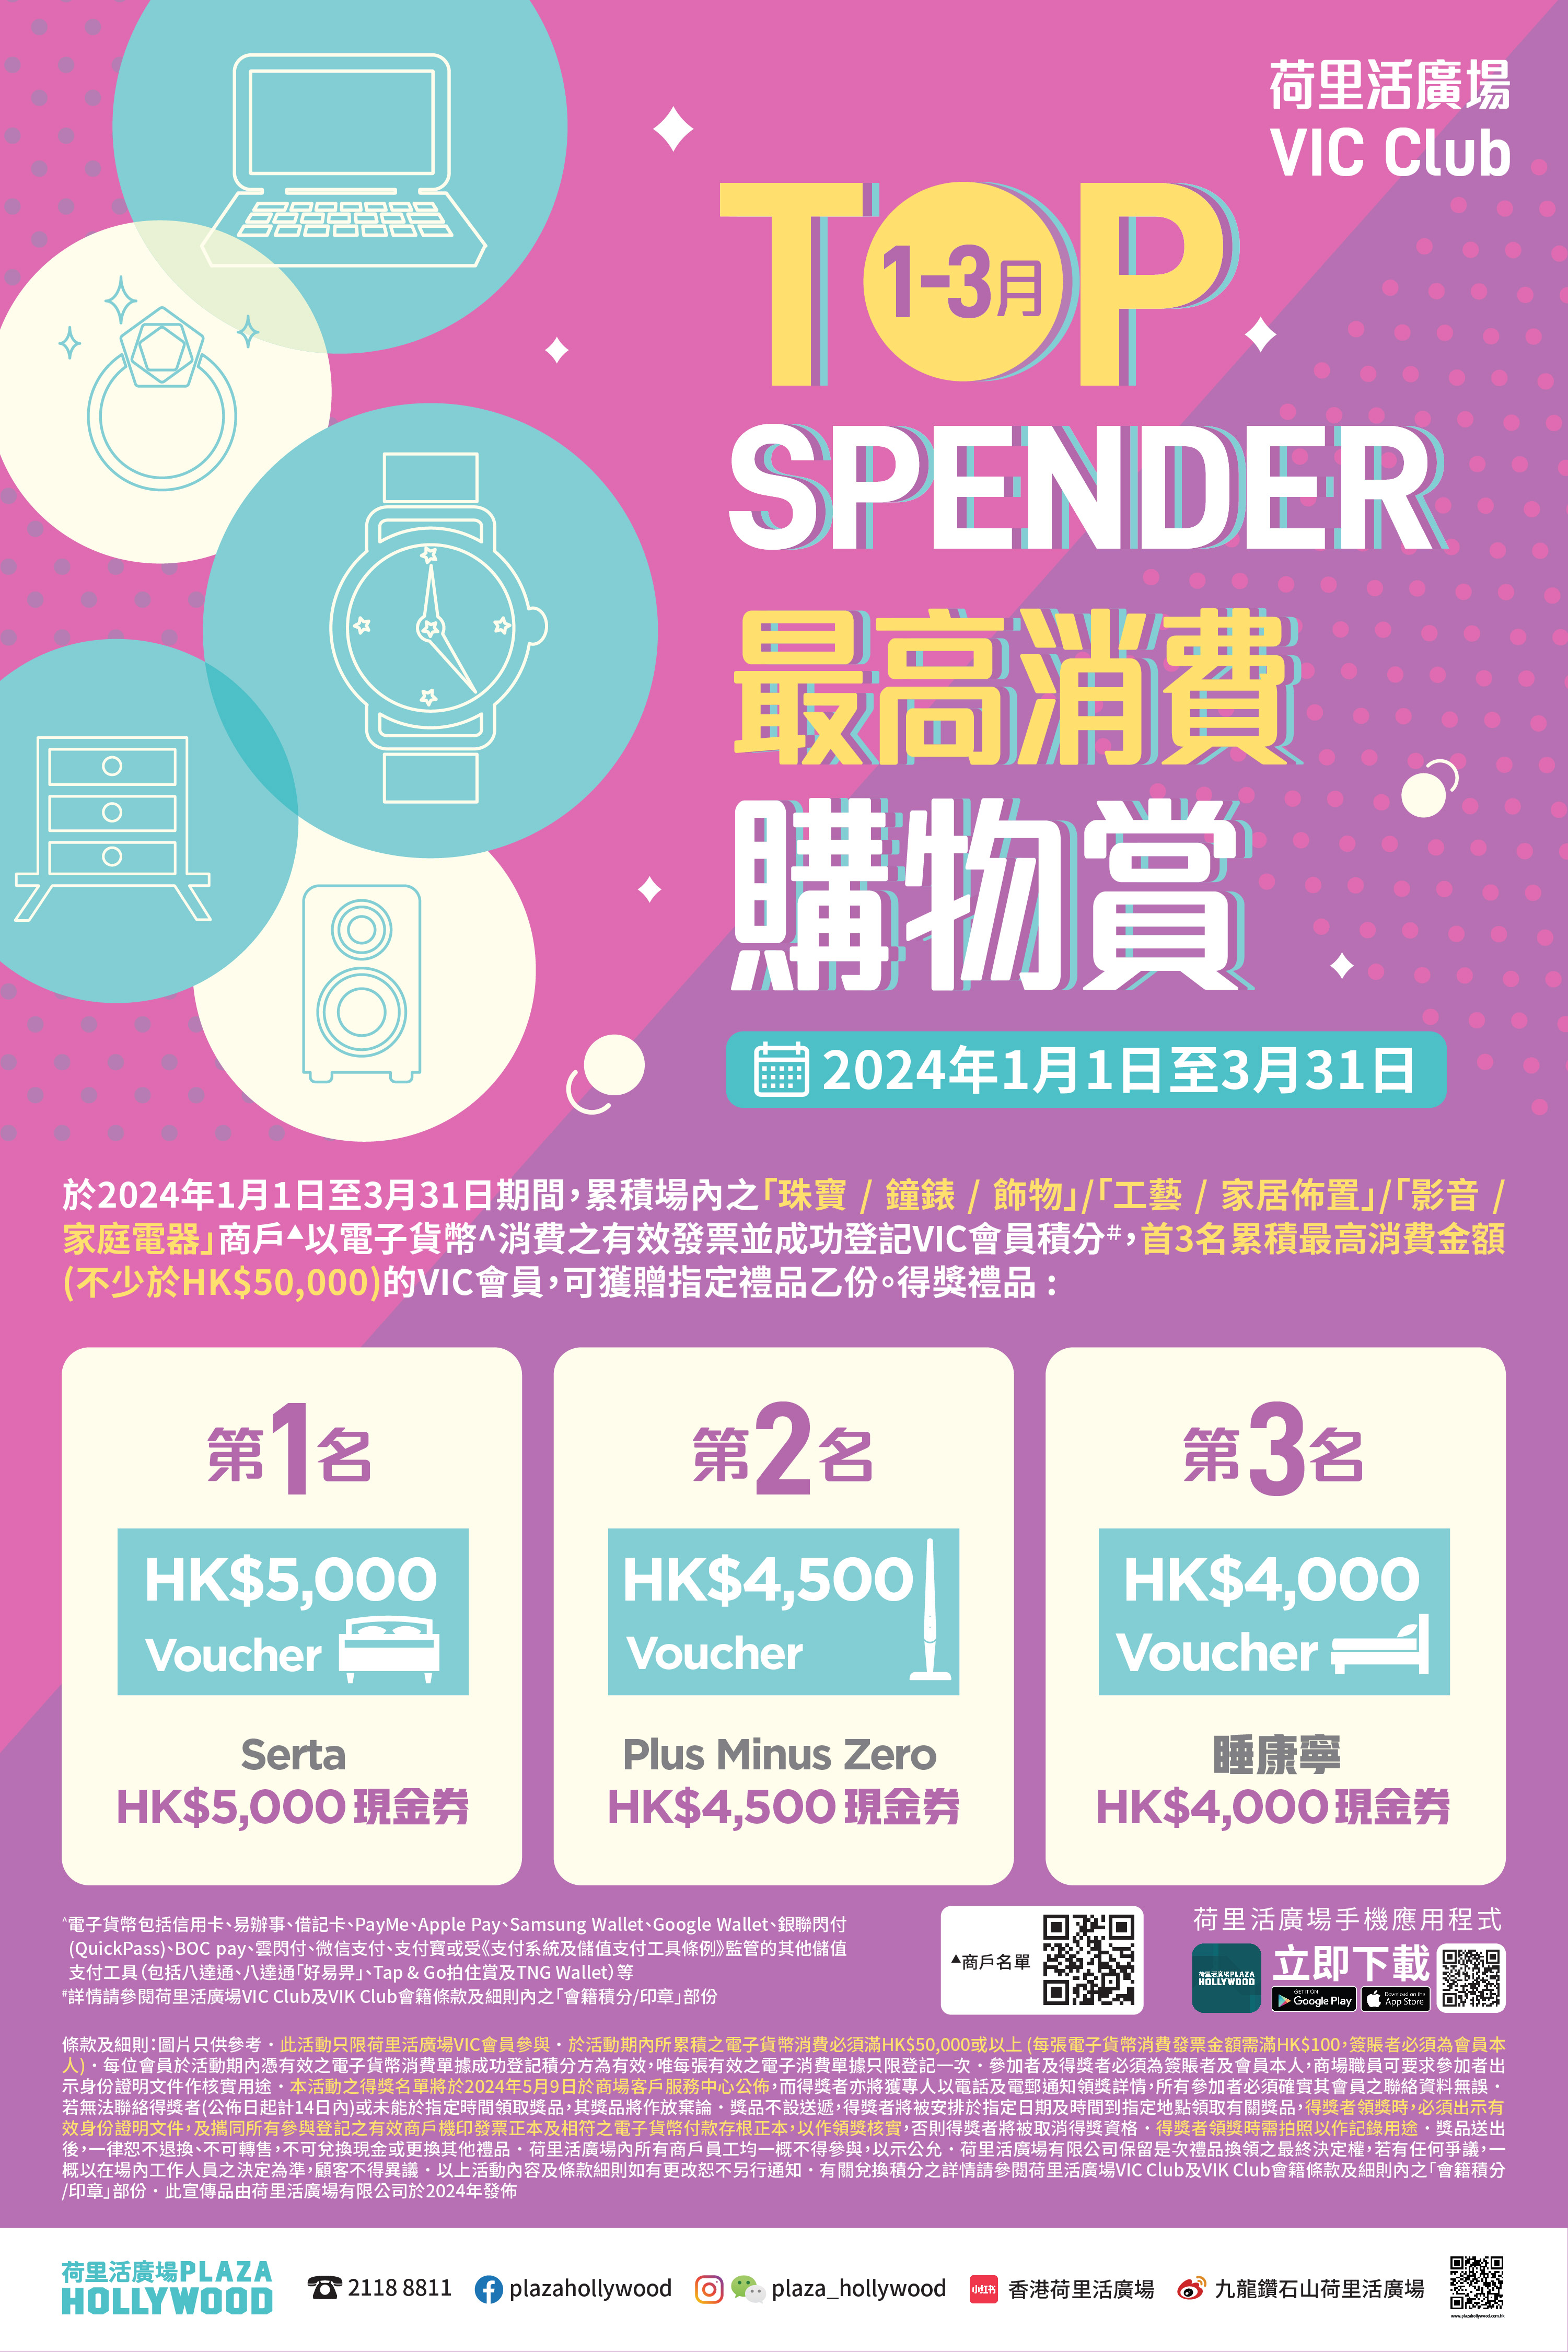 VIC Highest Spending Program (Jan-Mar) 